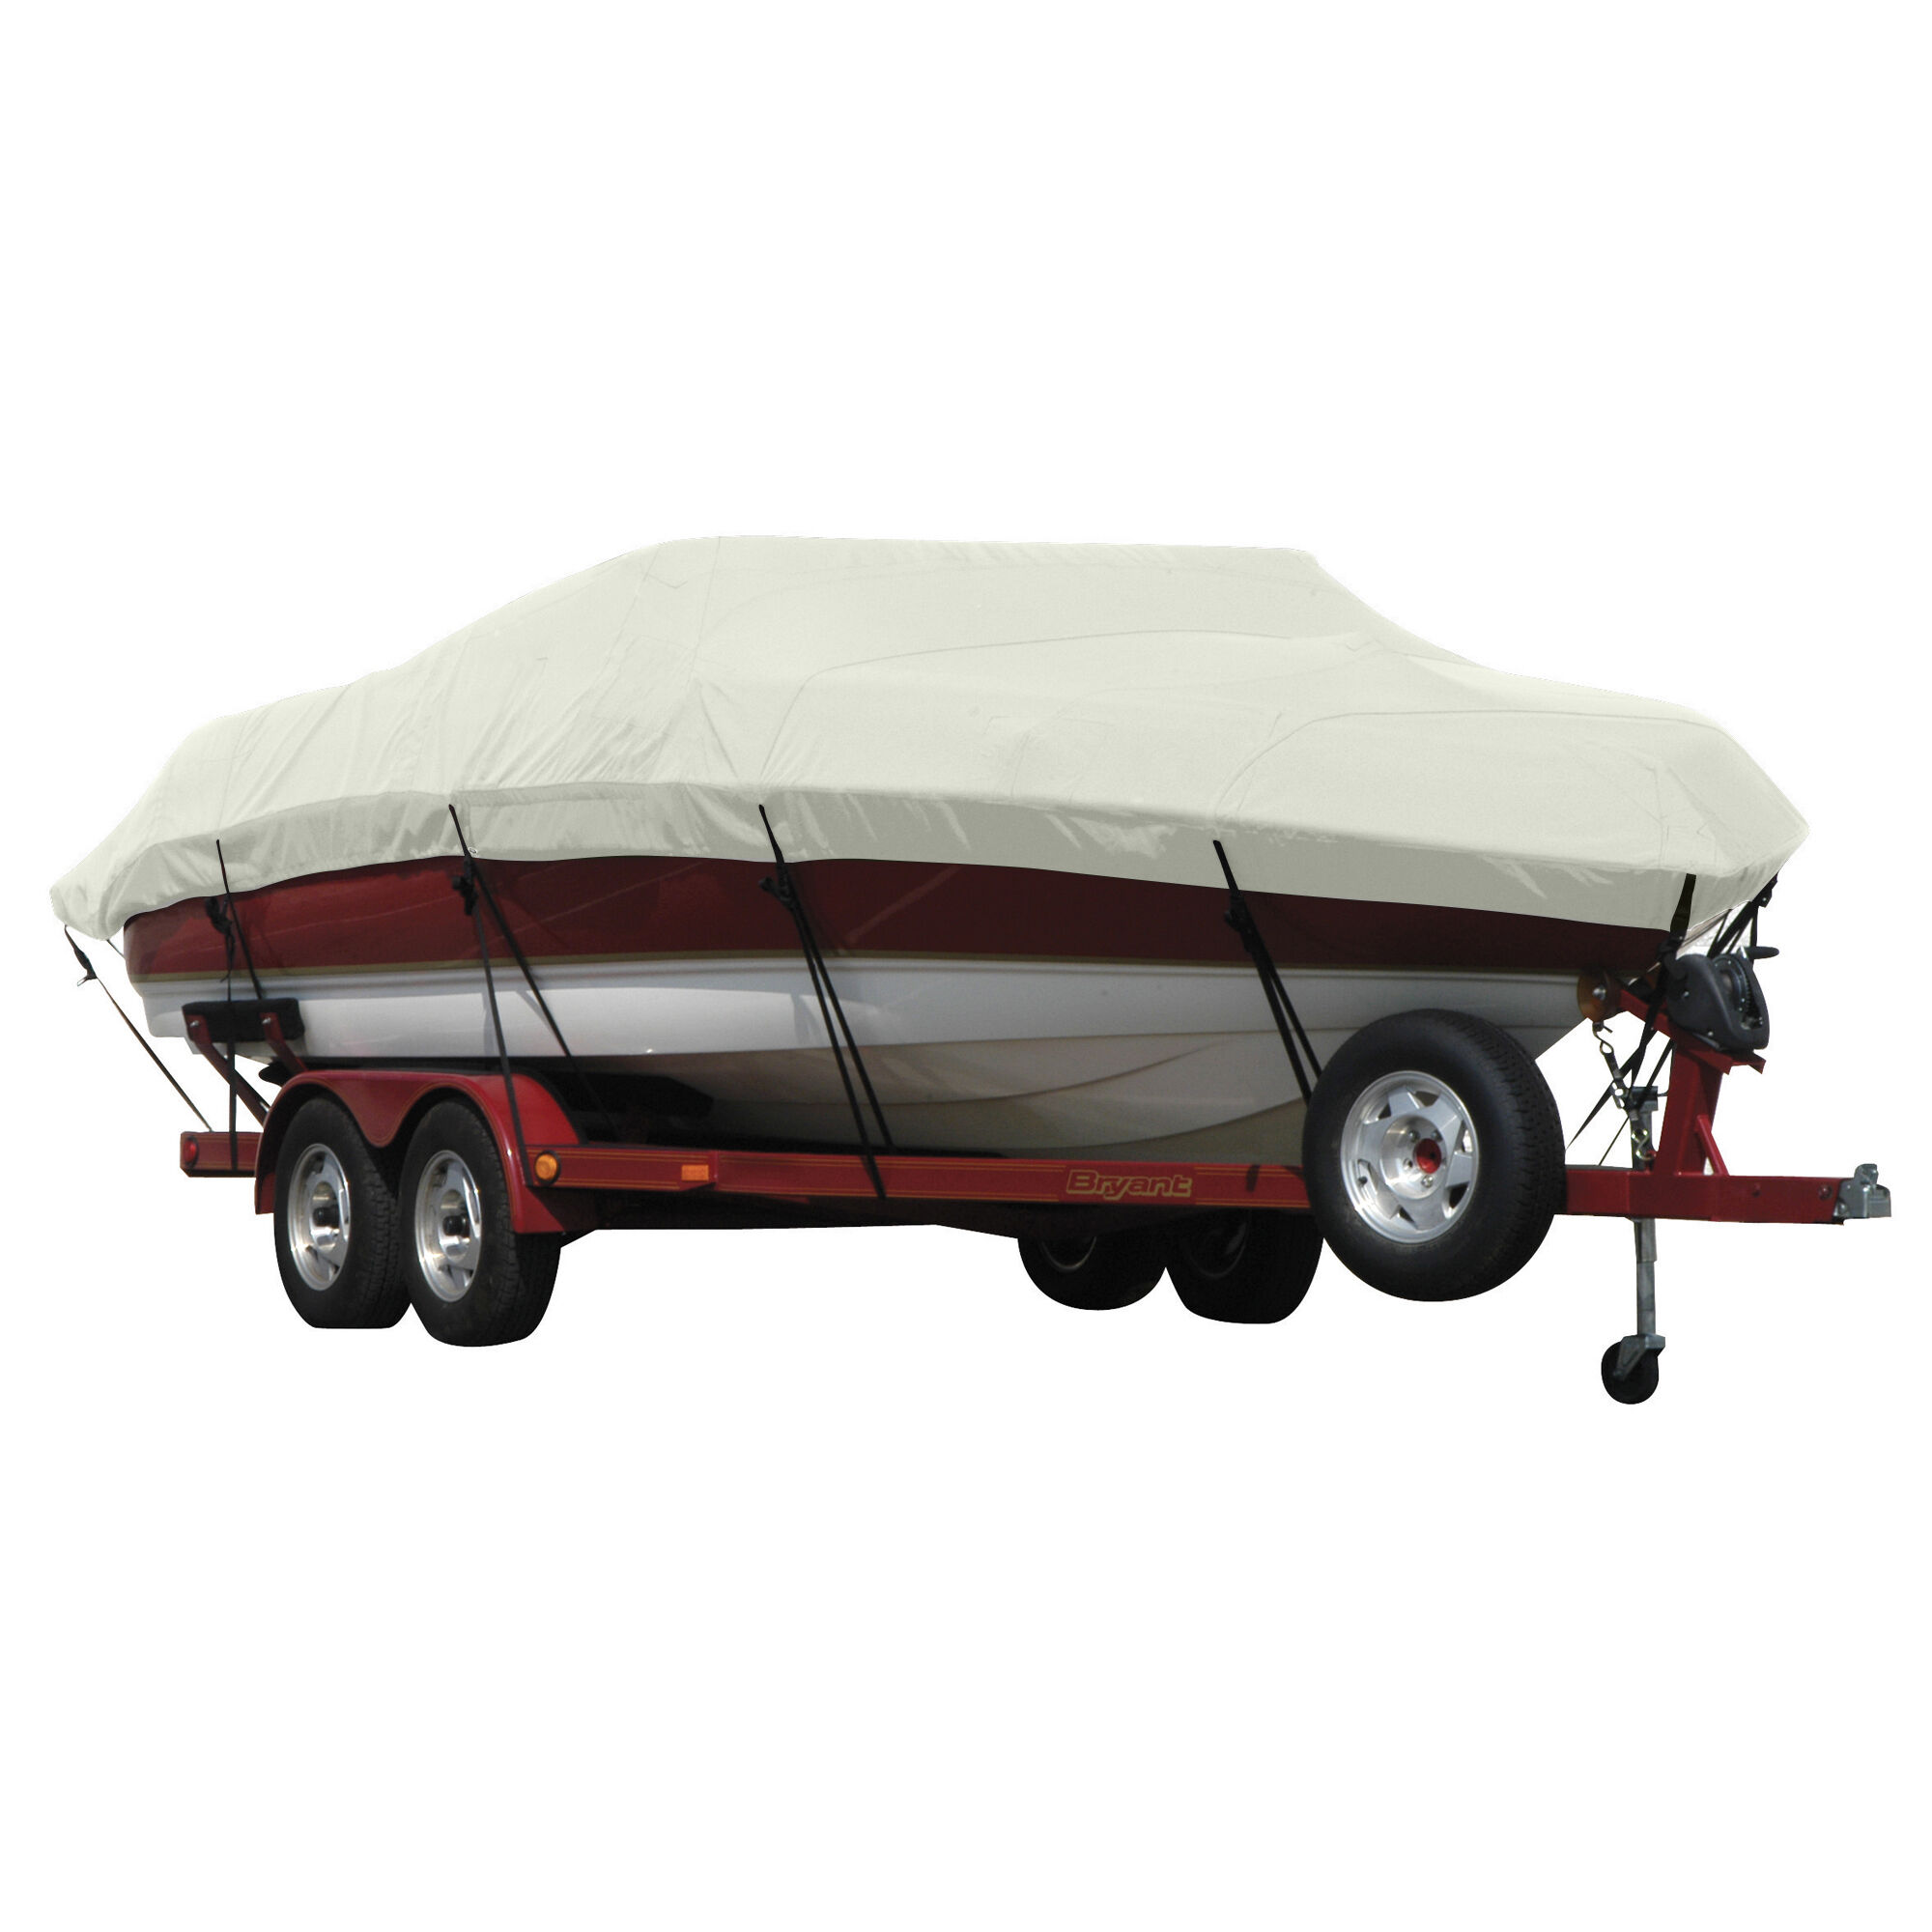 Covermate Exact Fit Sunbrella Boat Cover for Seaswirl Striper 2100 Striper 2100 Hard Top I/O. Silver